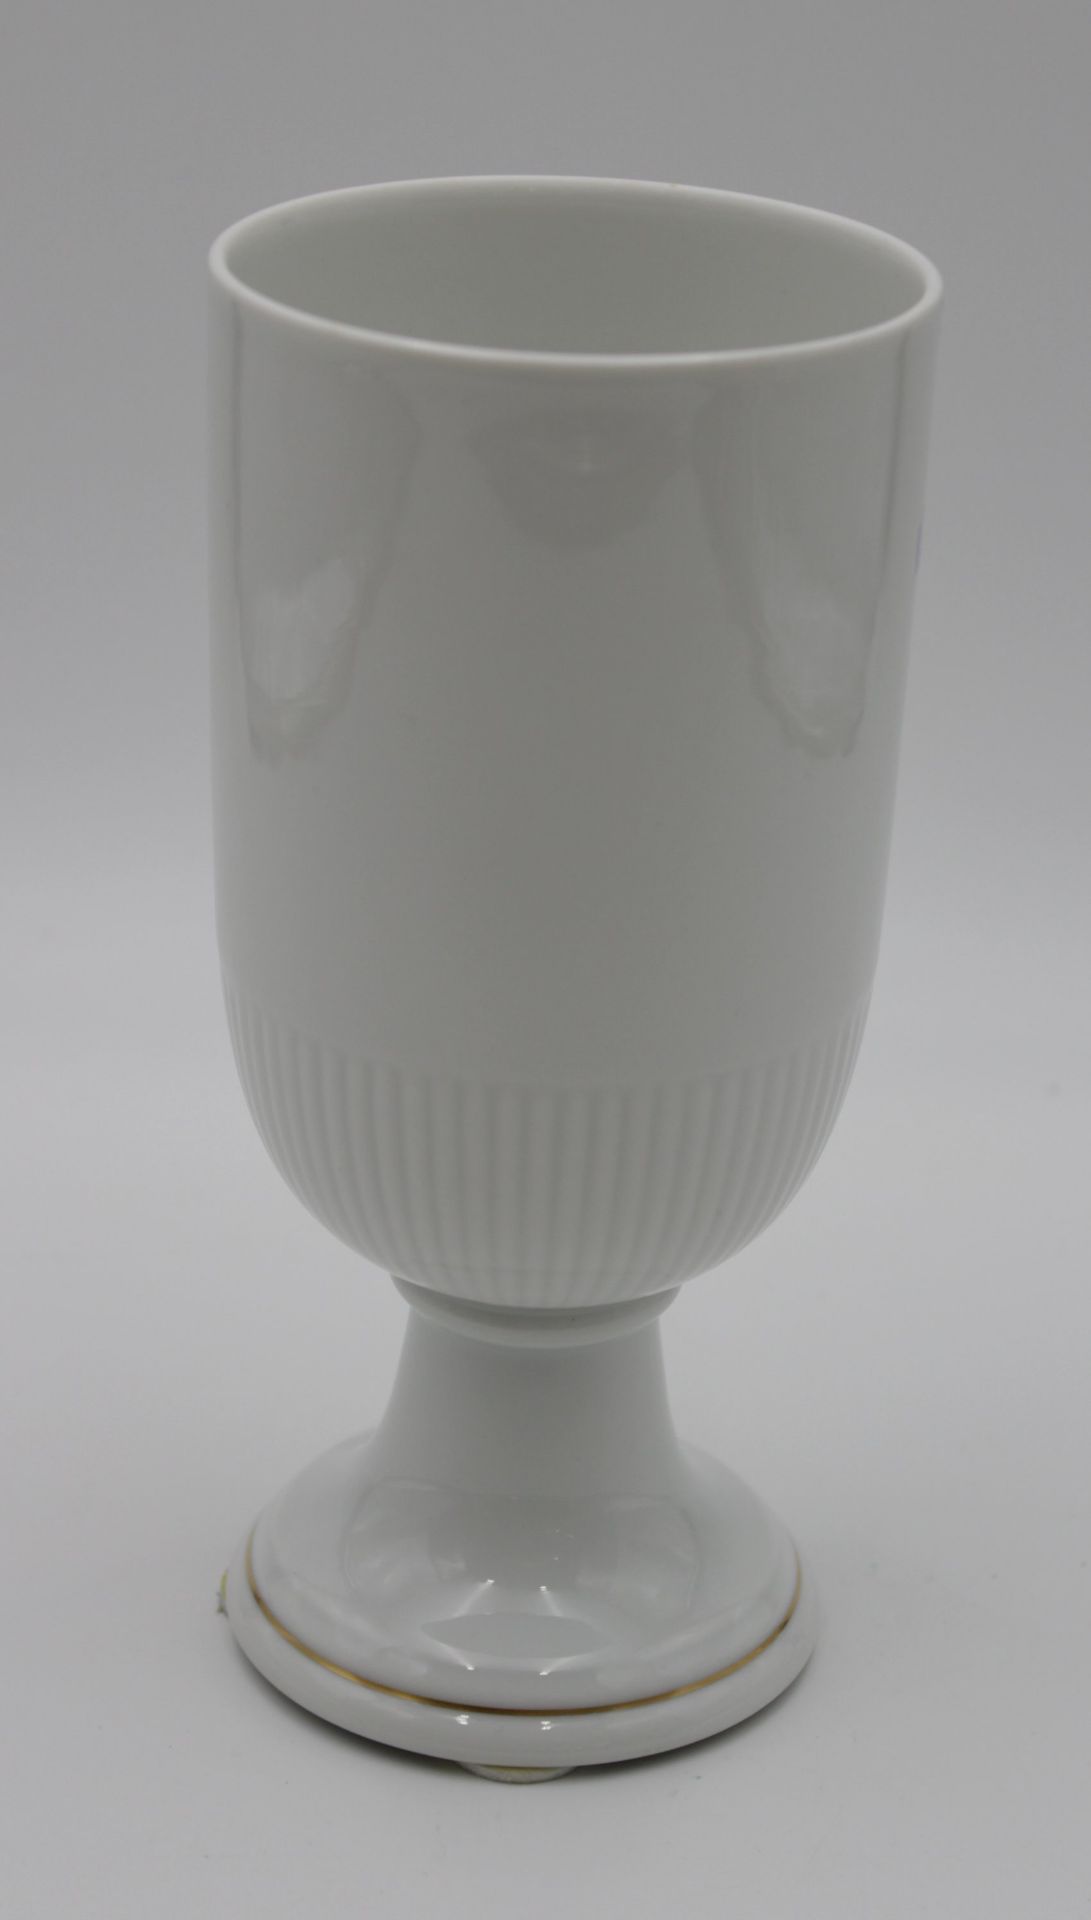 Vase auf Stand, Hutschenreuther, florales Dekor, Marke durchschliffen, H-20,8cm. - Image 3 of 5